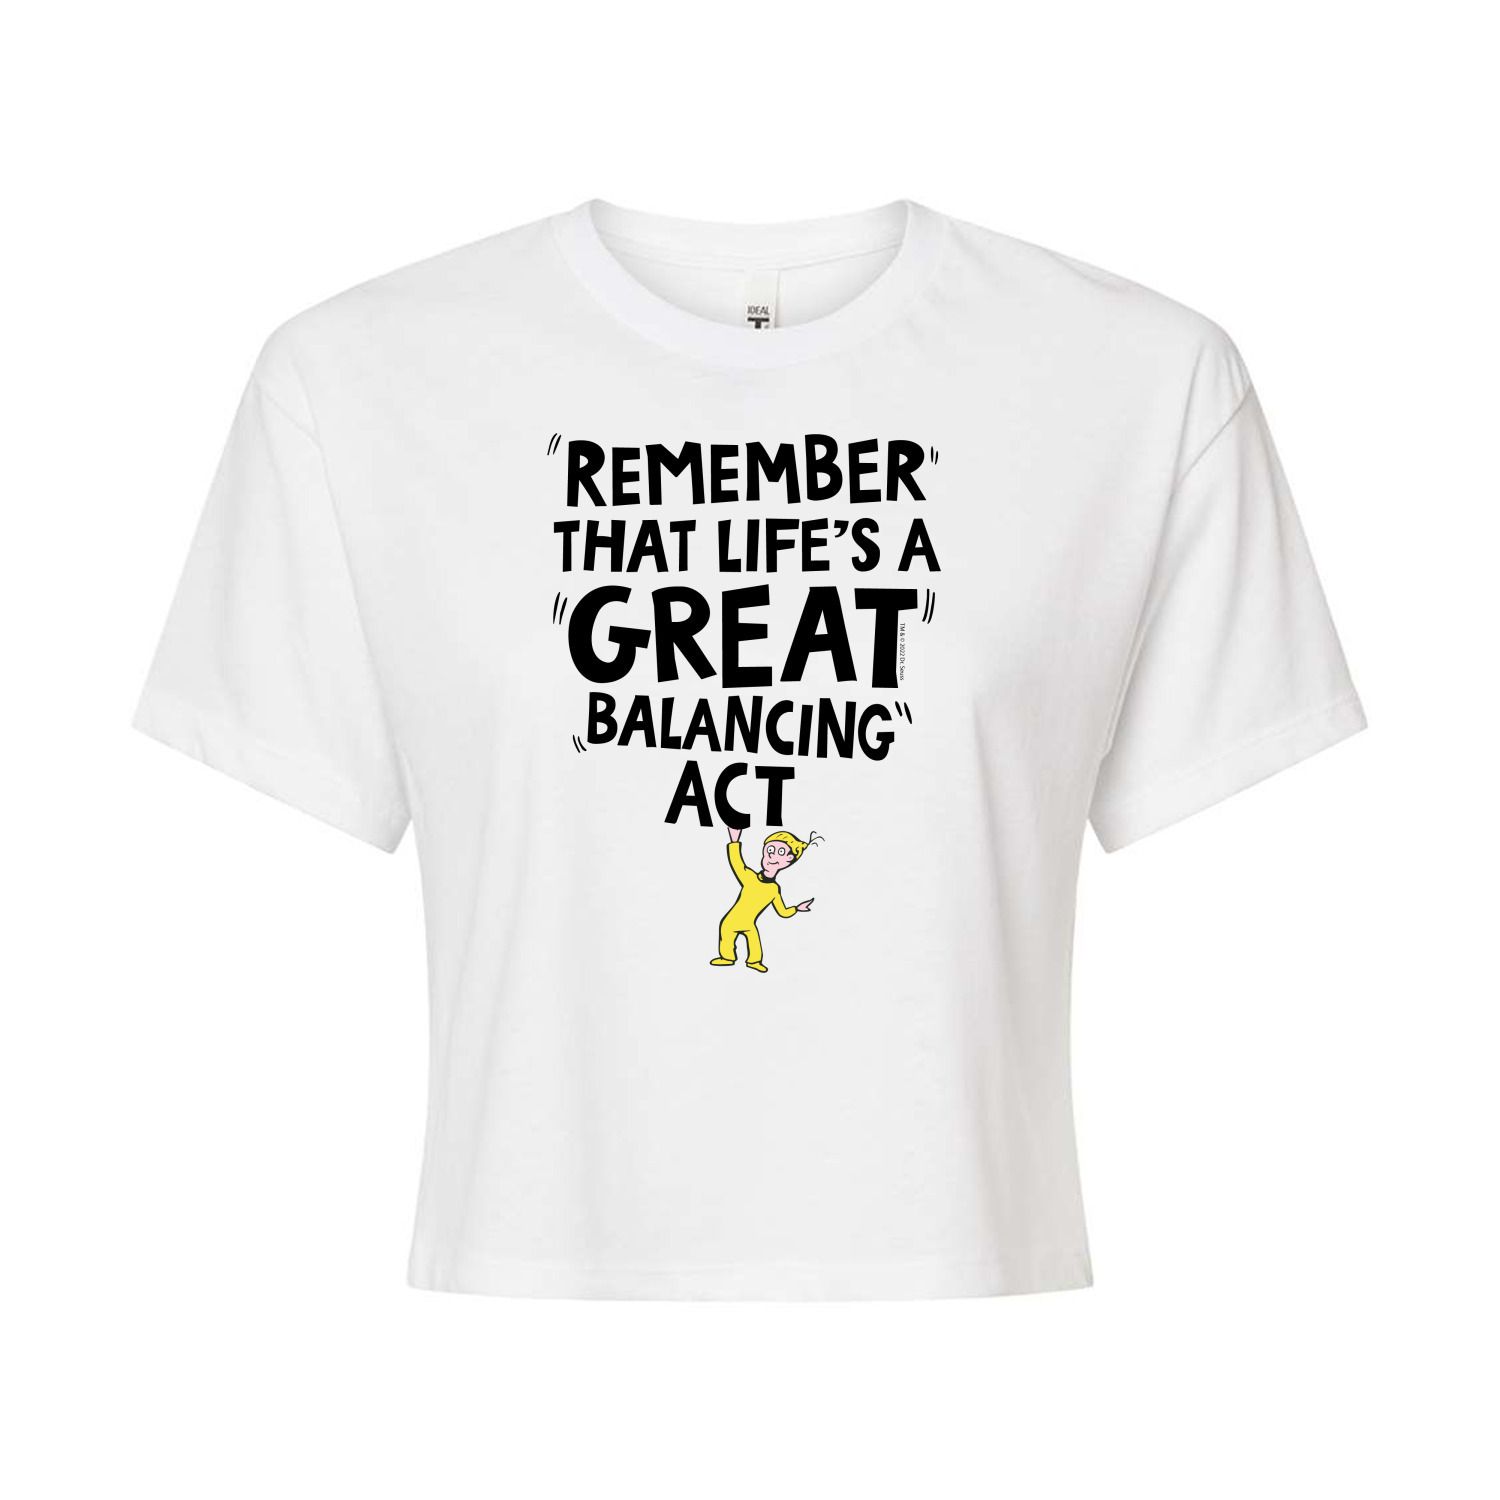 Укороченная футболка для юниоров Dr. Seuss Balancing Act Licensed Character, белый